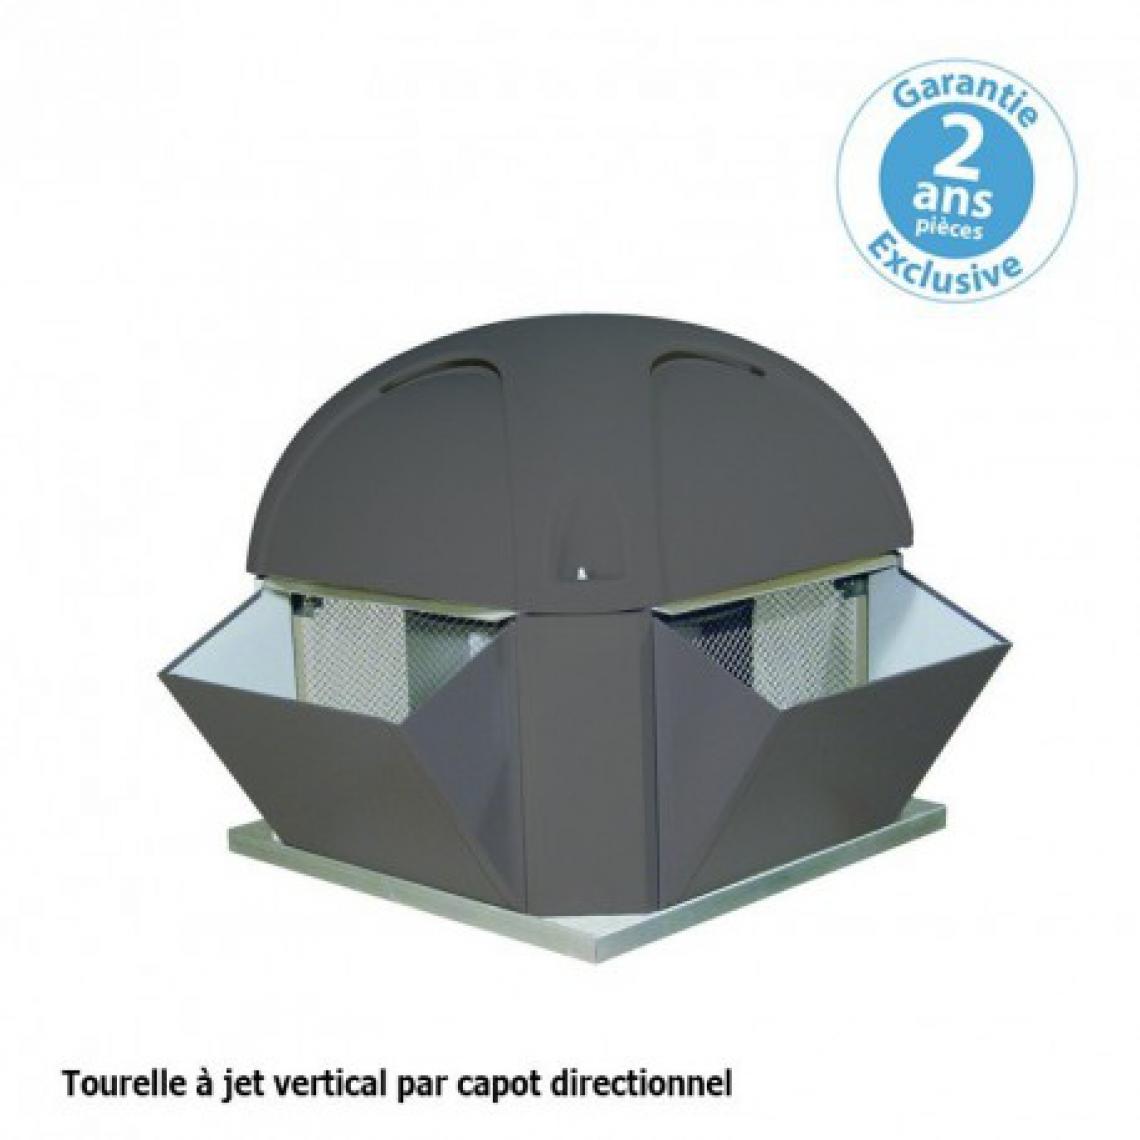 Furnotel - Tourelle 1 vitesse - triphasée - refoulement vertical - 5000 m³ / h sous 390 Pa - - VMC, Ventilation